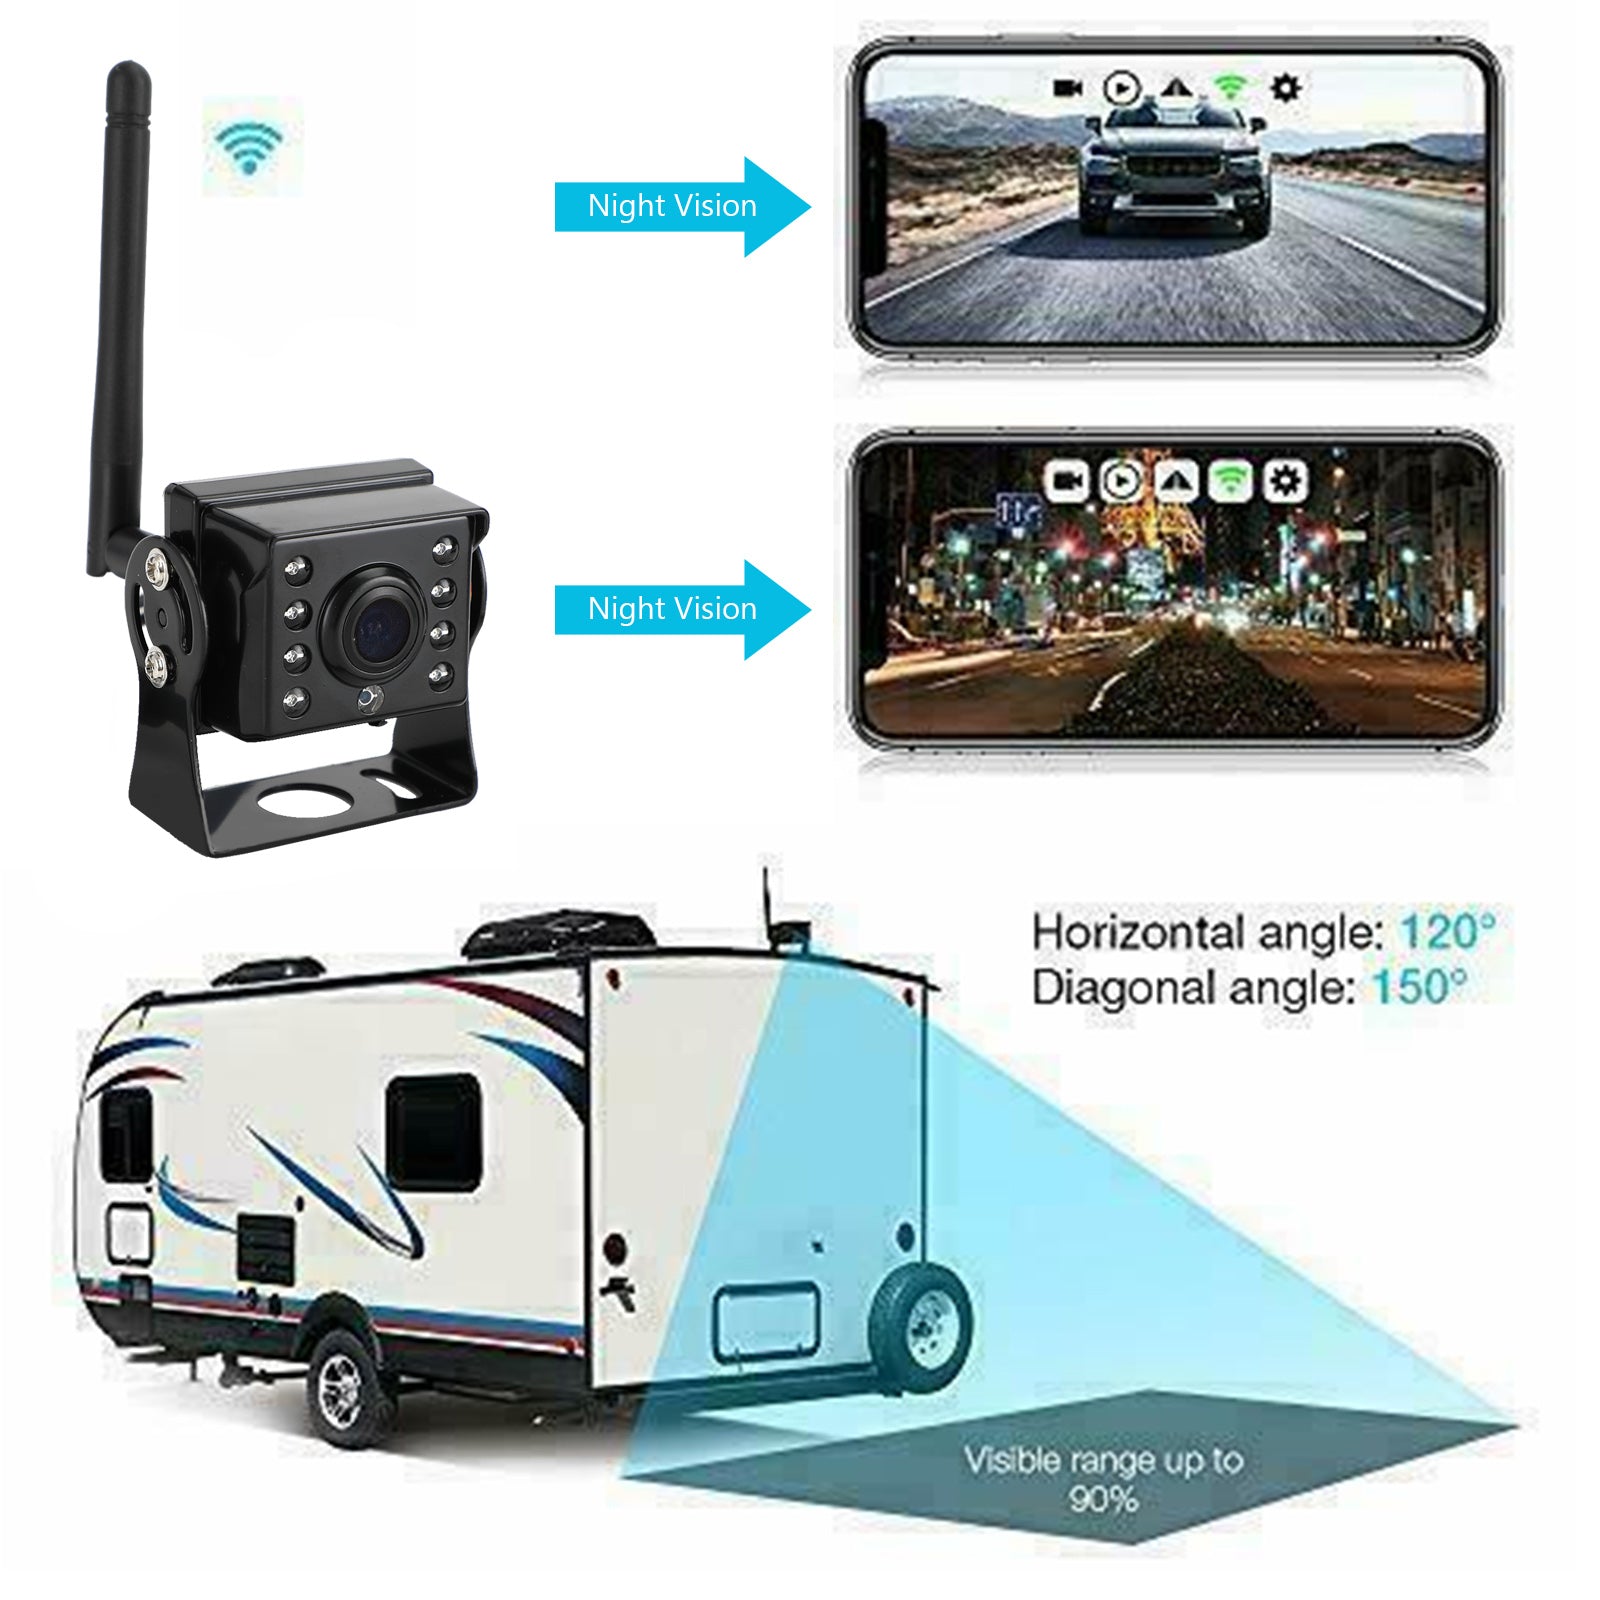 WiFi sans fil voiture camion RV remorque vue arrière caméra de recul CCTV pour iOS Android